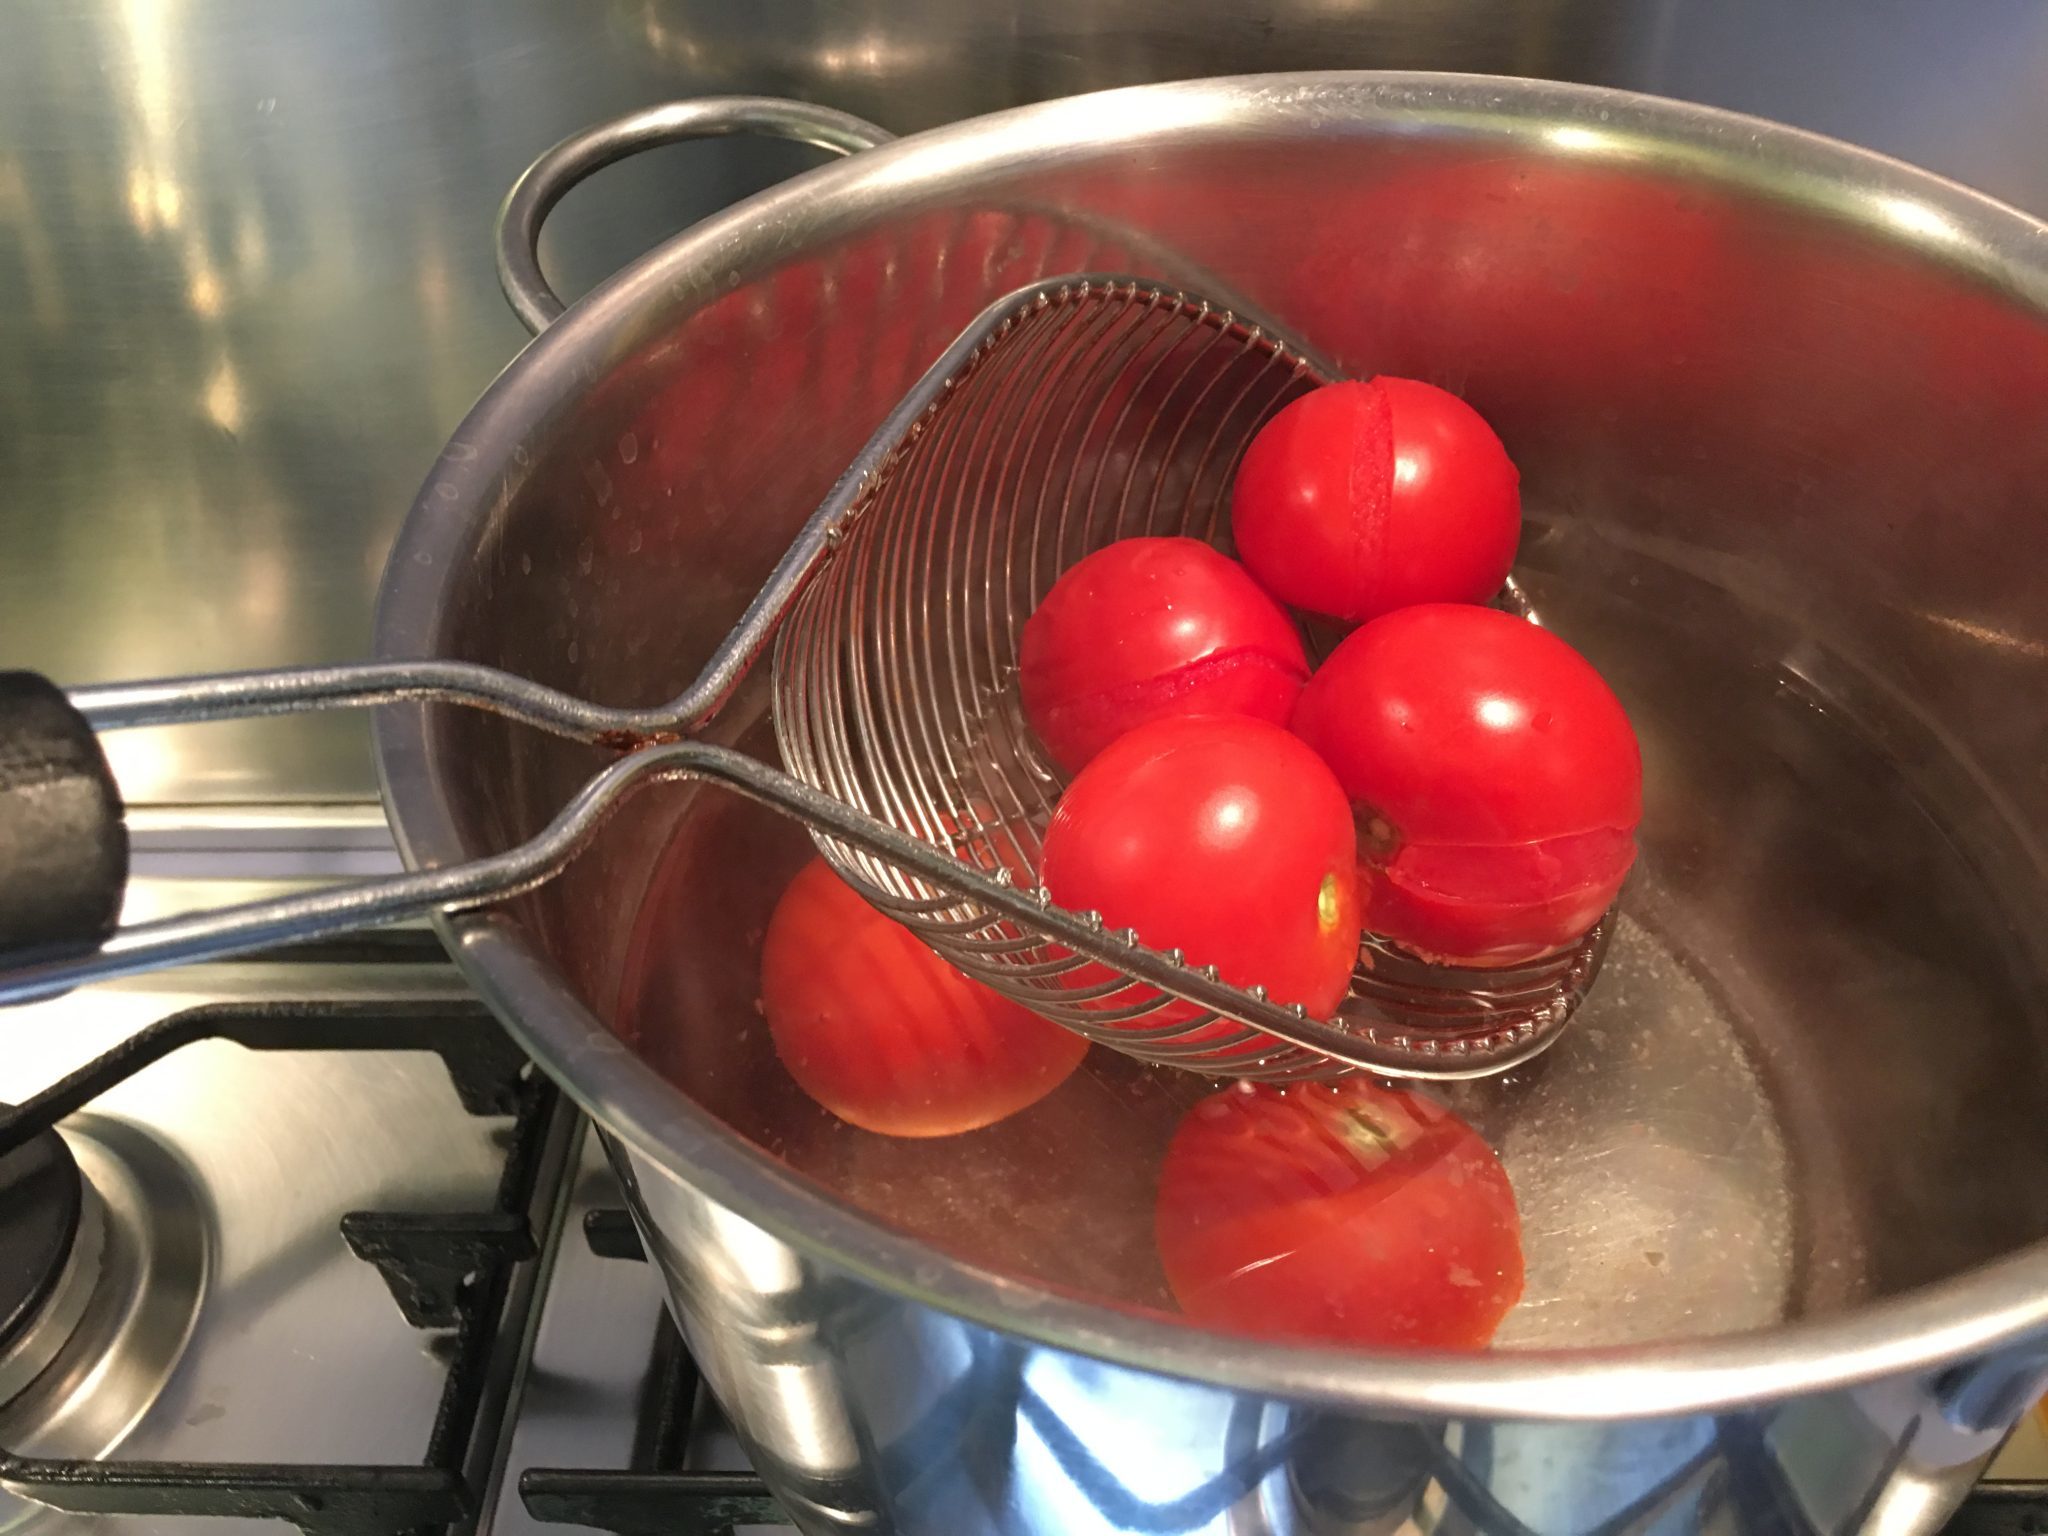 Trofie al pesto di pomodoro e basilico - i pomodori sbollentati nella pentola